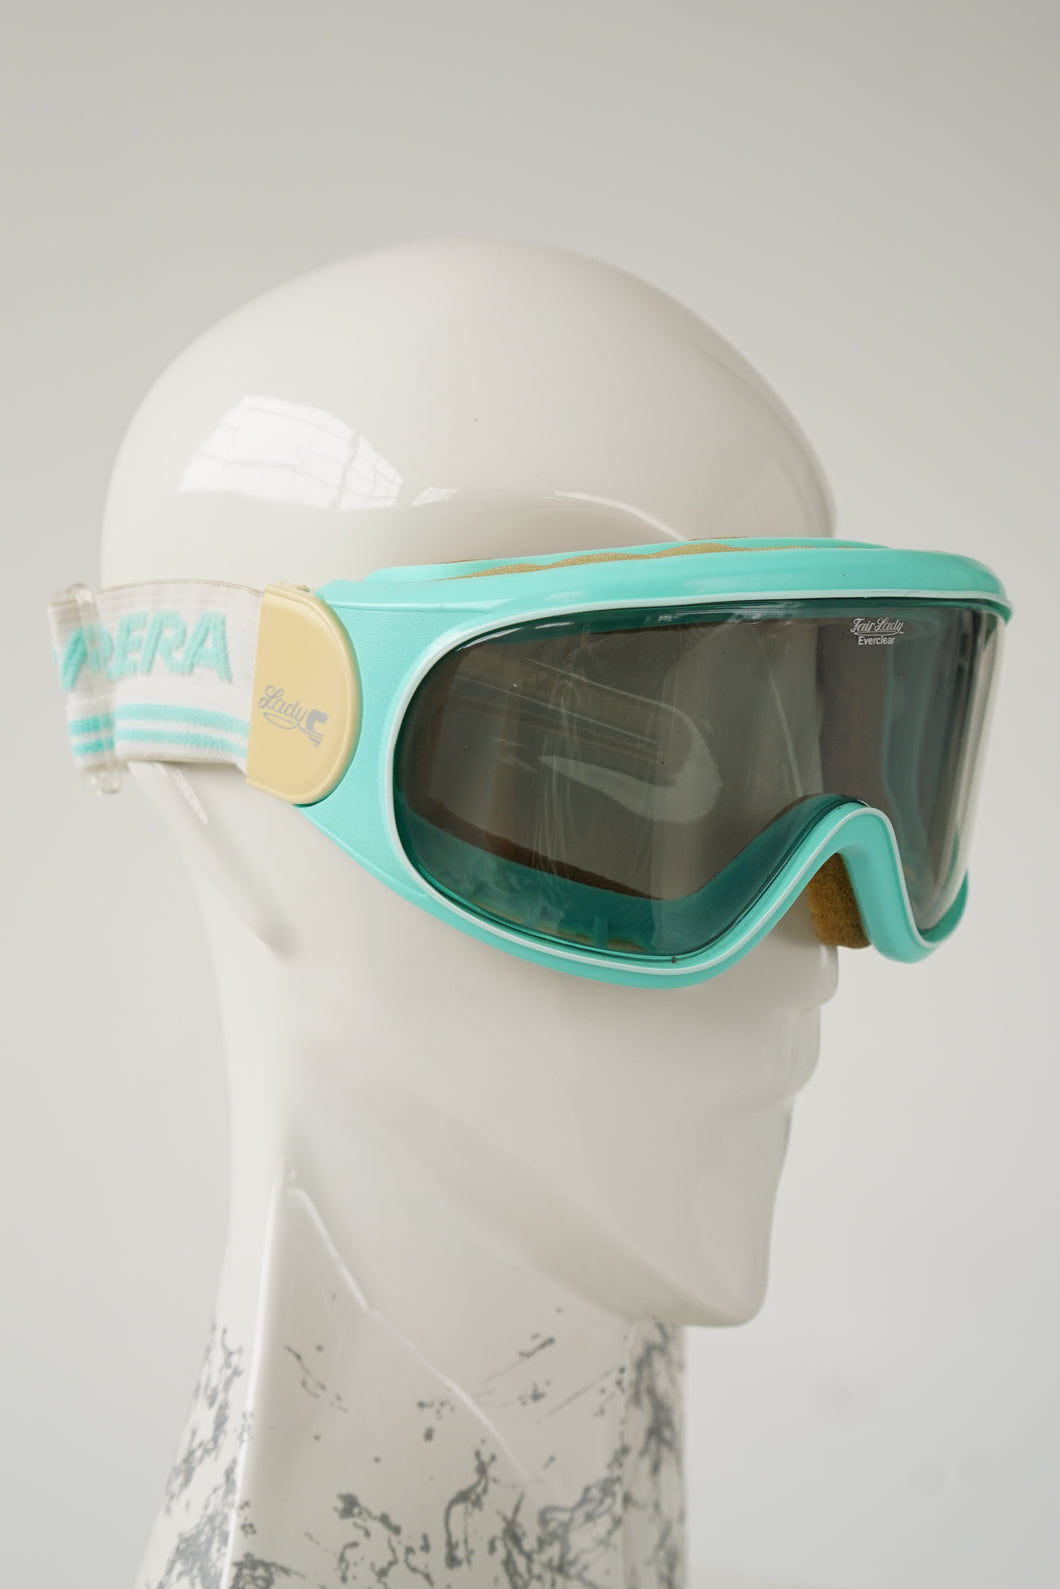 Lunette de ski vintage Carrera FairLady Everclear turquoise et blanche pour petit visage